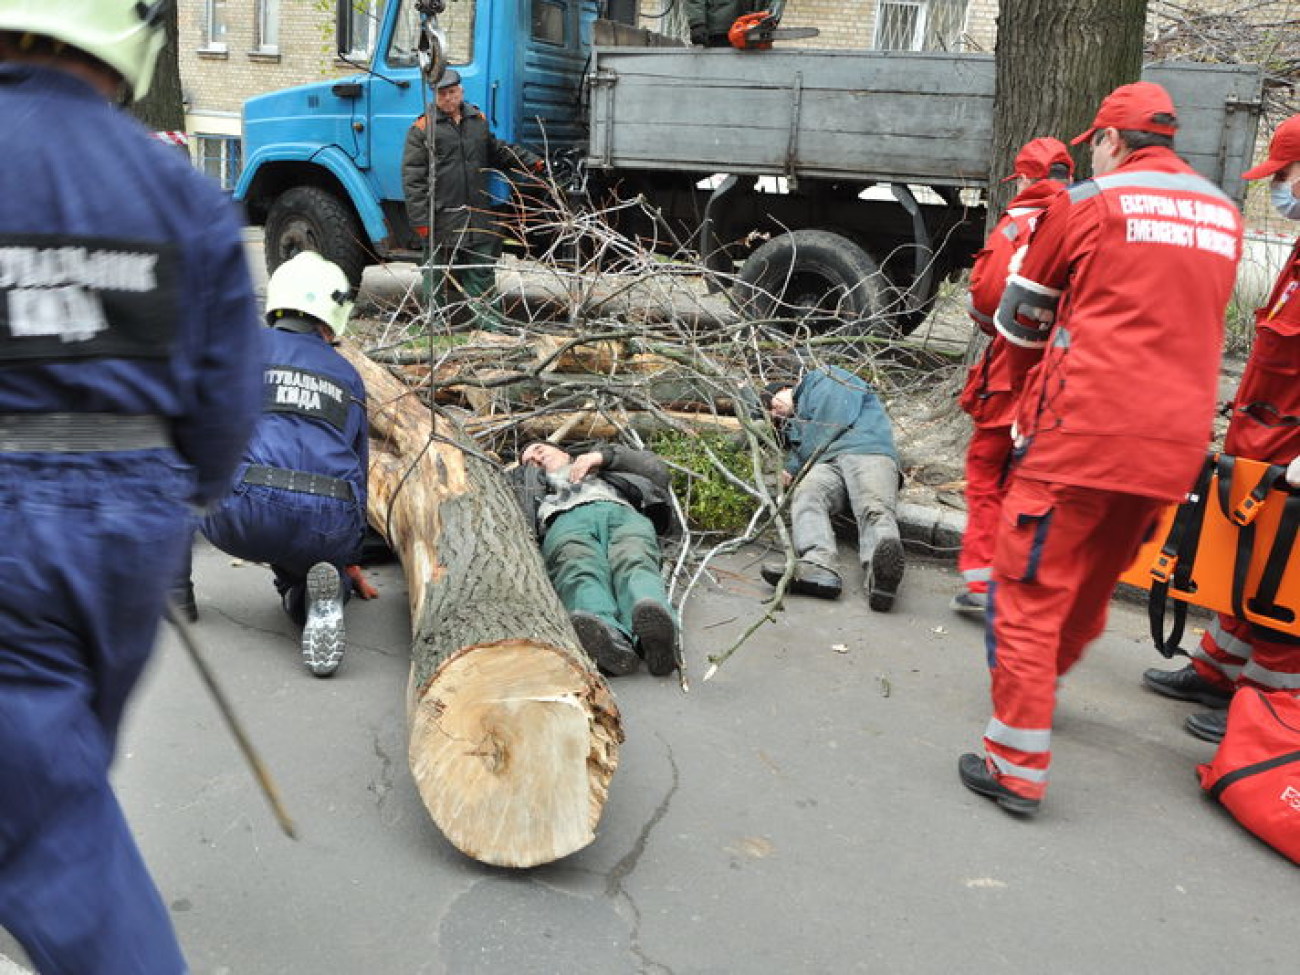 Киевские службы гражданской защиты учились действовать при неблагоприятных погодных условиях, 9 ноября 2012г.